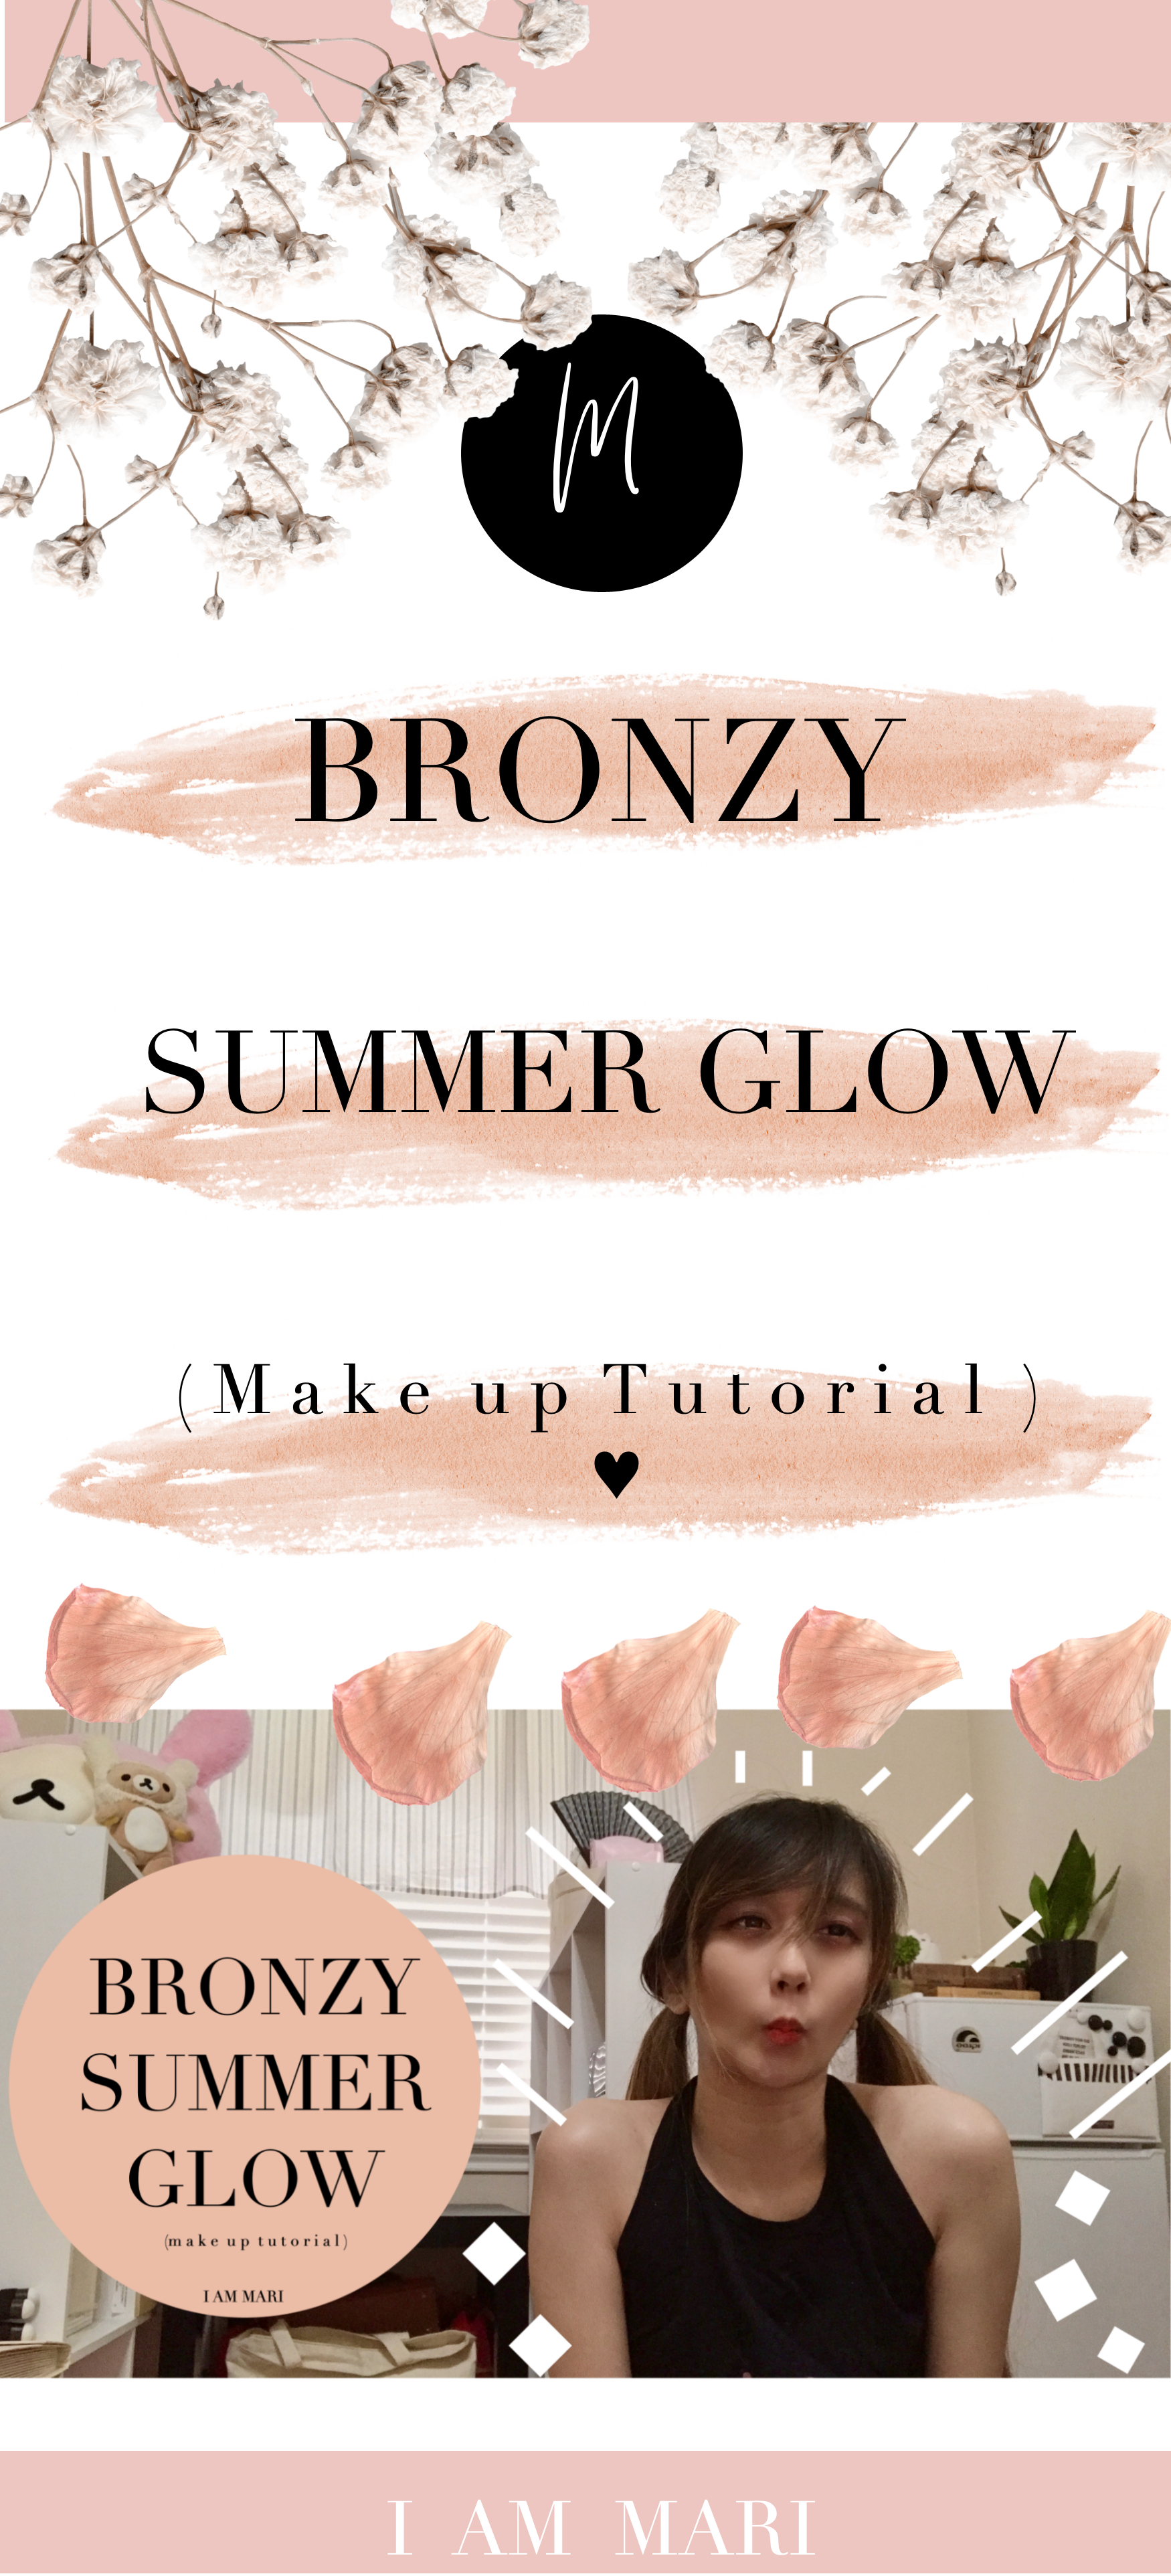 Bronzy Summer Glow Make Up Tutorial